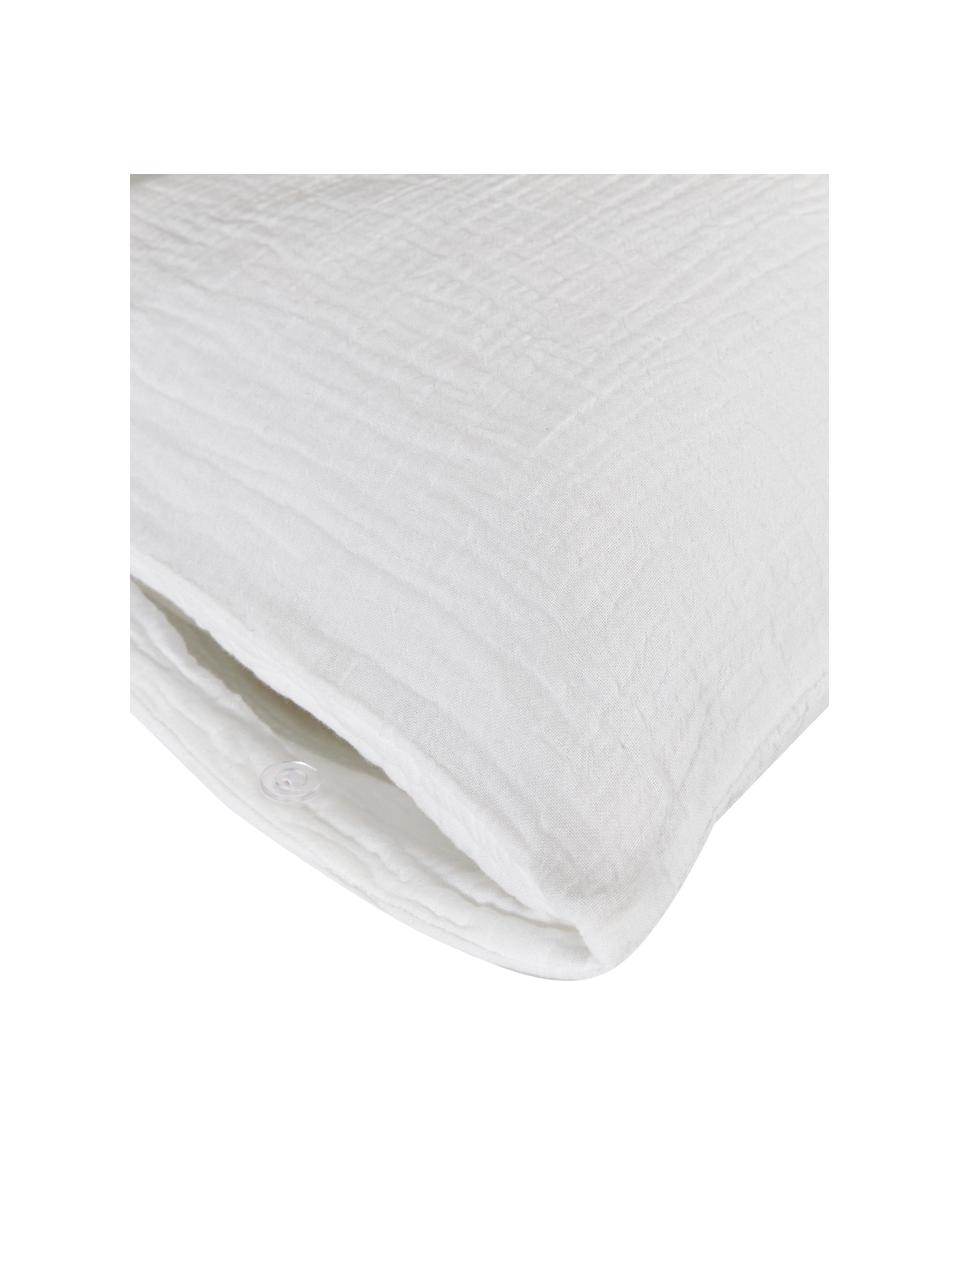 Musselin-Kopfkissenbezüge aus Baumwolle in Weiß, 2 Stück, Webart: Musselin Fadendichte 200 , Weiß, B 40 x L 80 cm